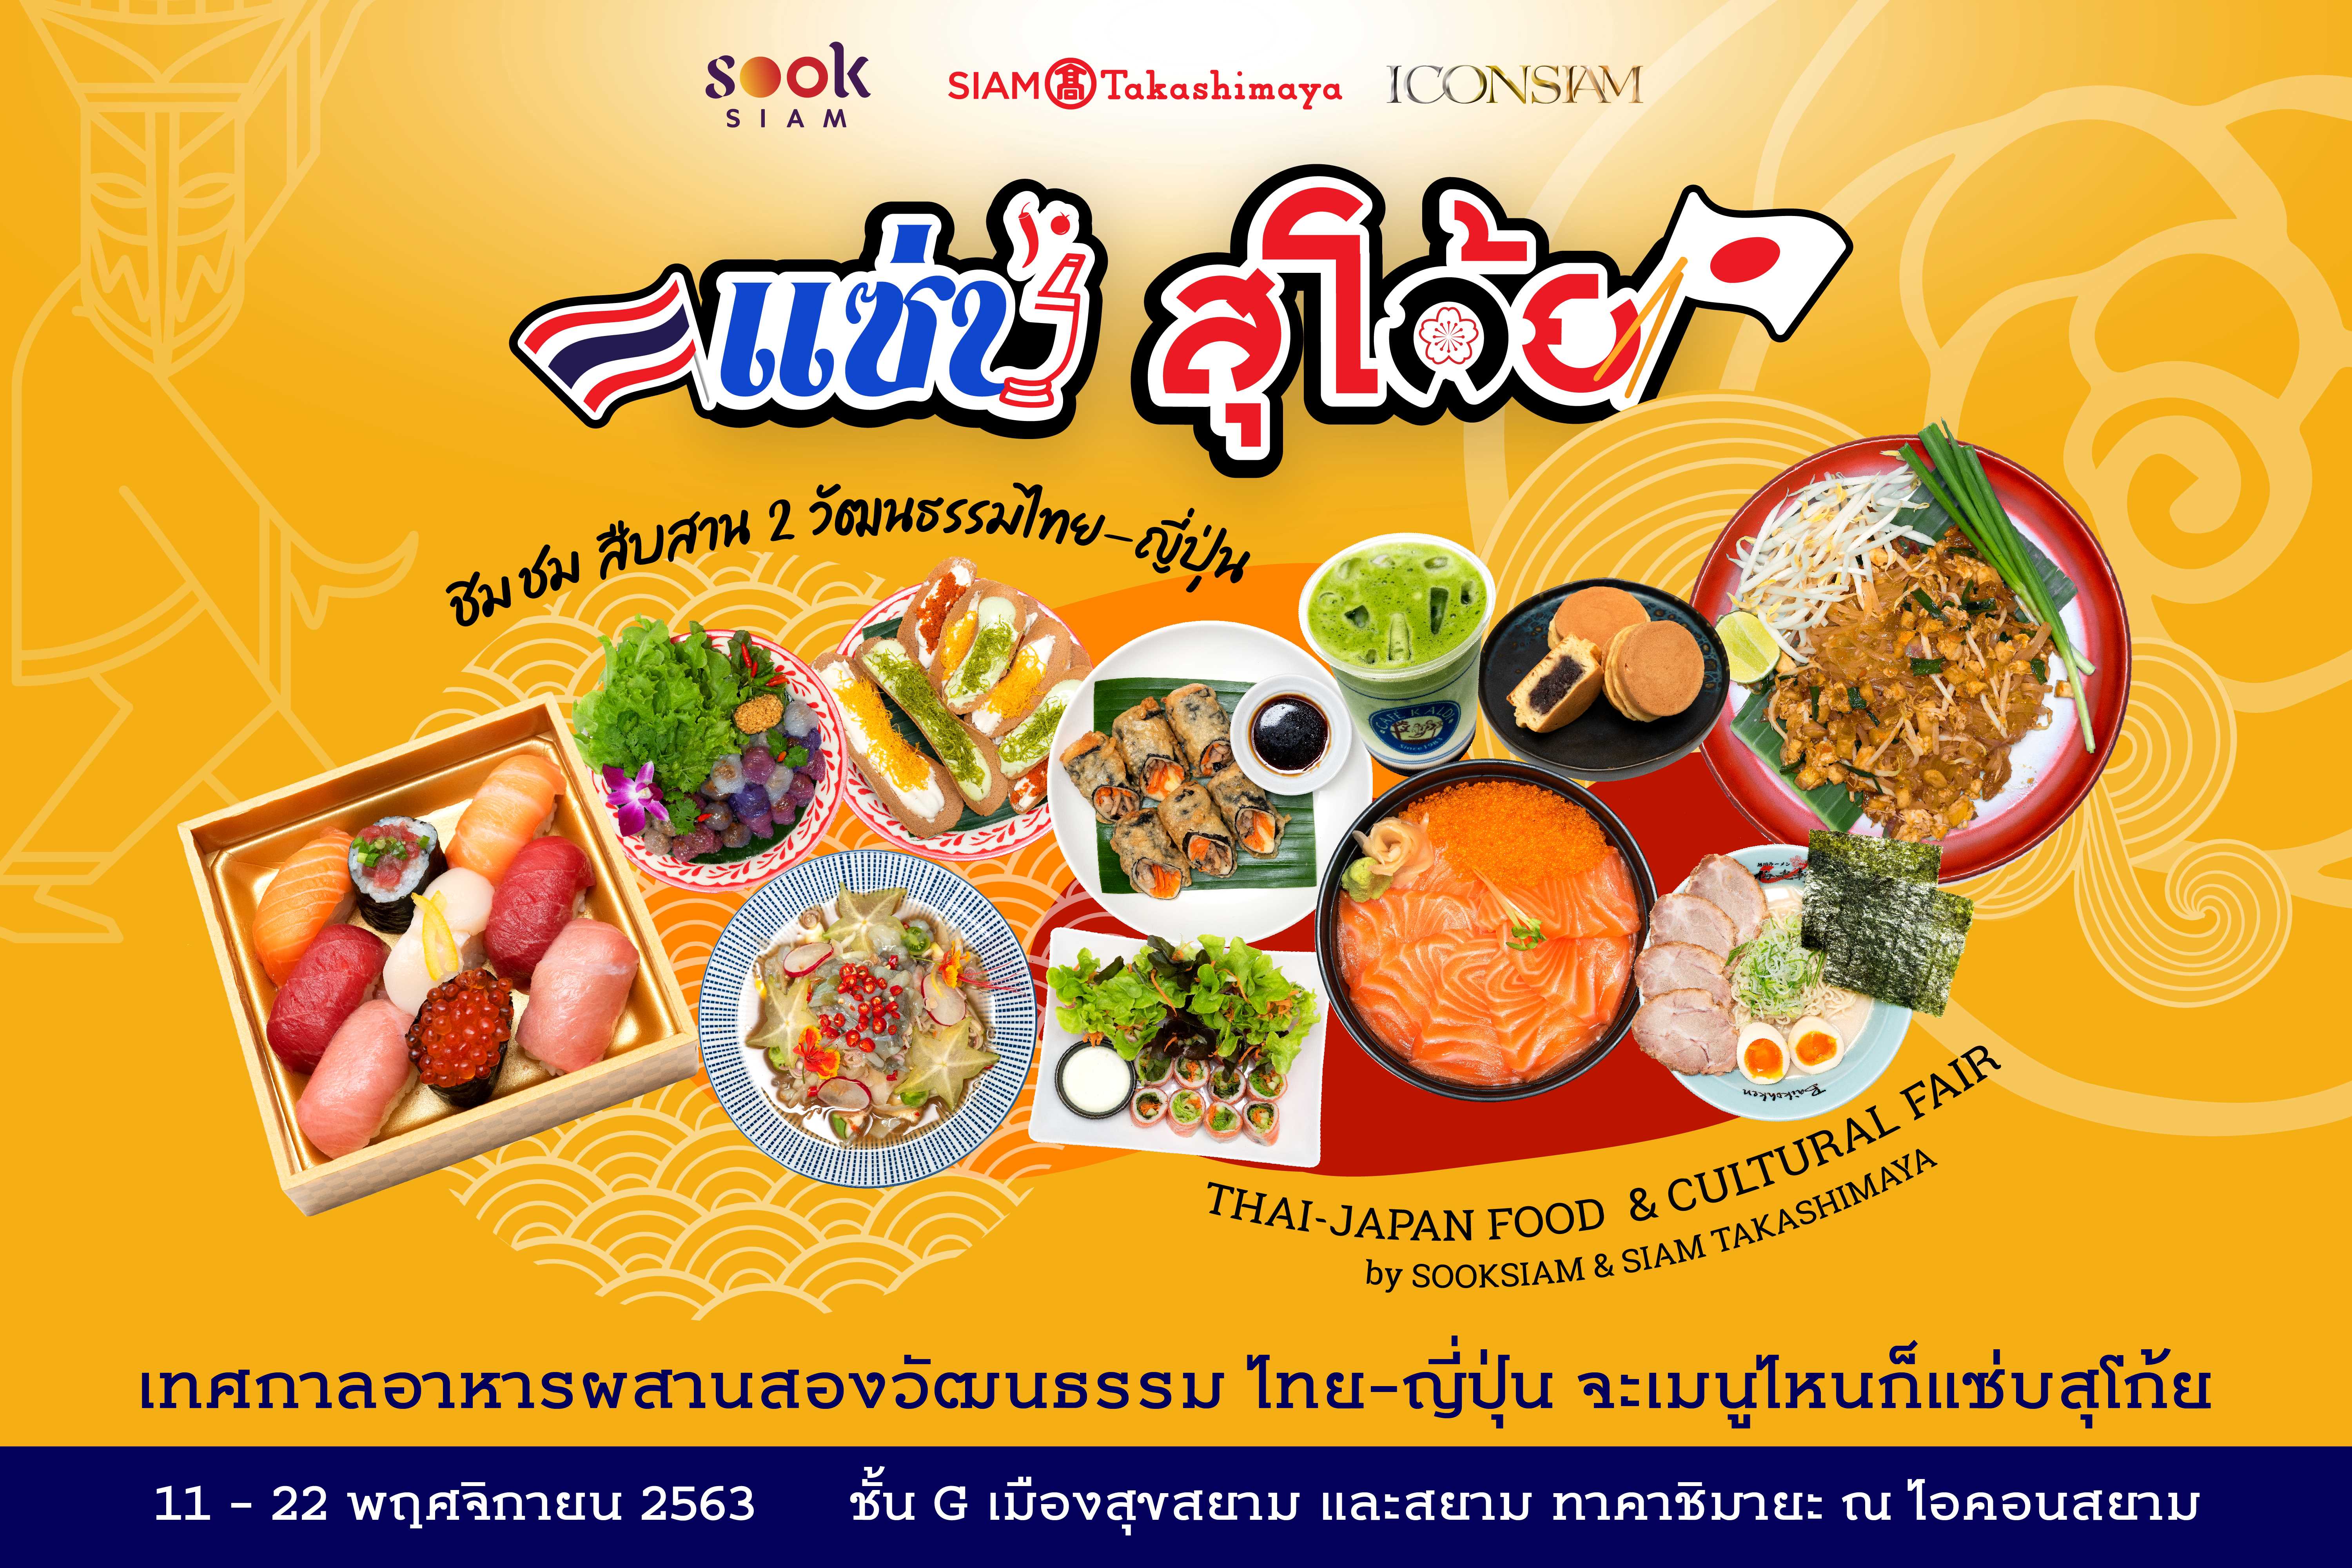 สยาม ทาคาชิมายะ ร่วมกับ เมืองสุขสยาม ชวนอิ่มอร่อยกับเทศกาลอาหารผสานสองวัฒนธรรมไทย - ญี่ปุ่น ในงาน แซ่บ สุโก้ย Zaab Sugoi Thai-Japan Food Cultural Fair